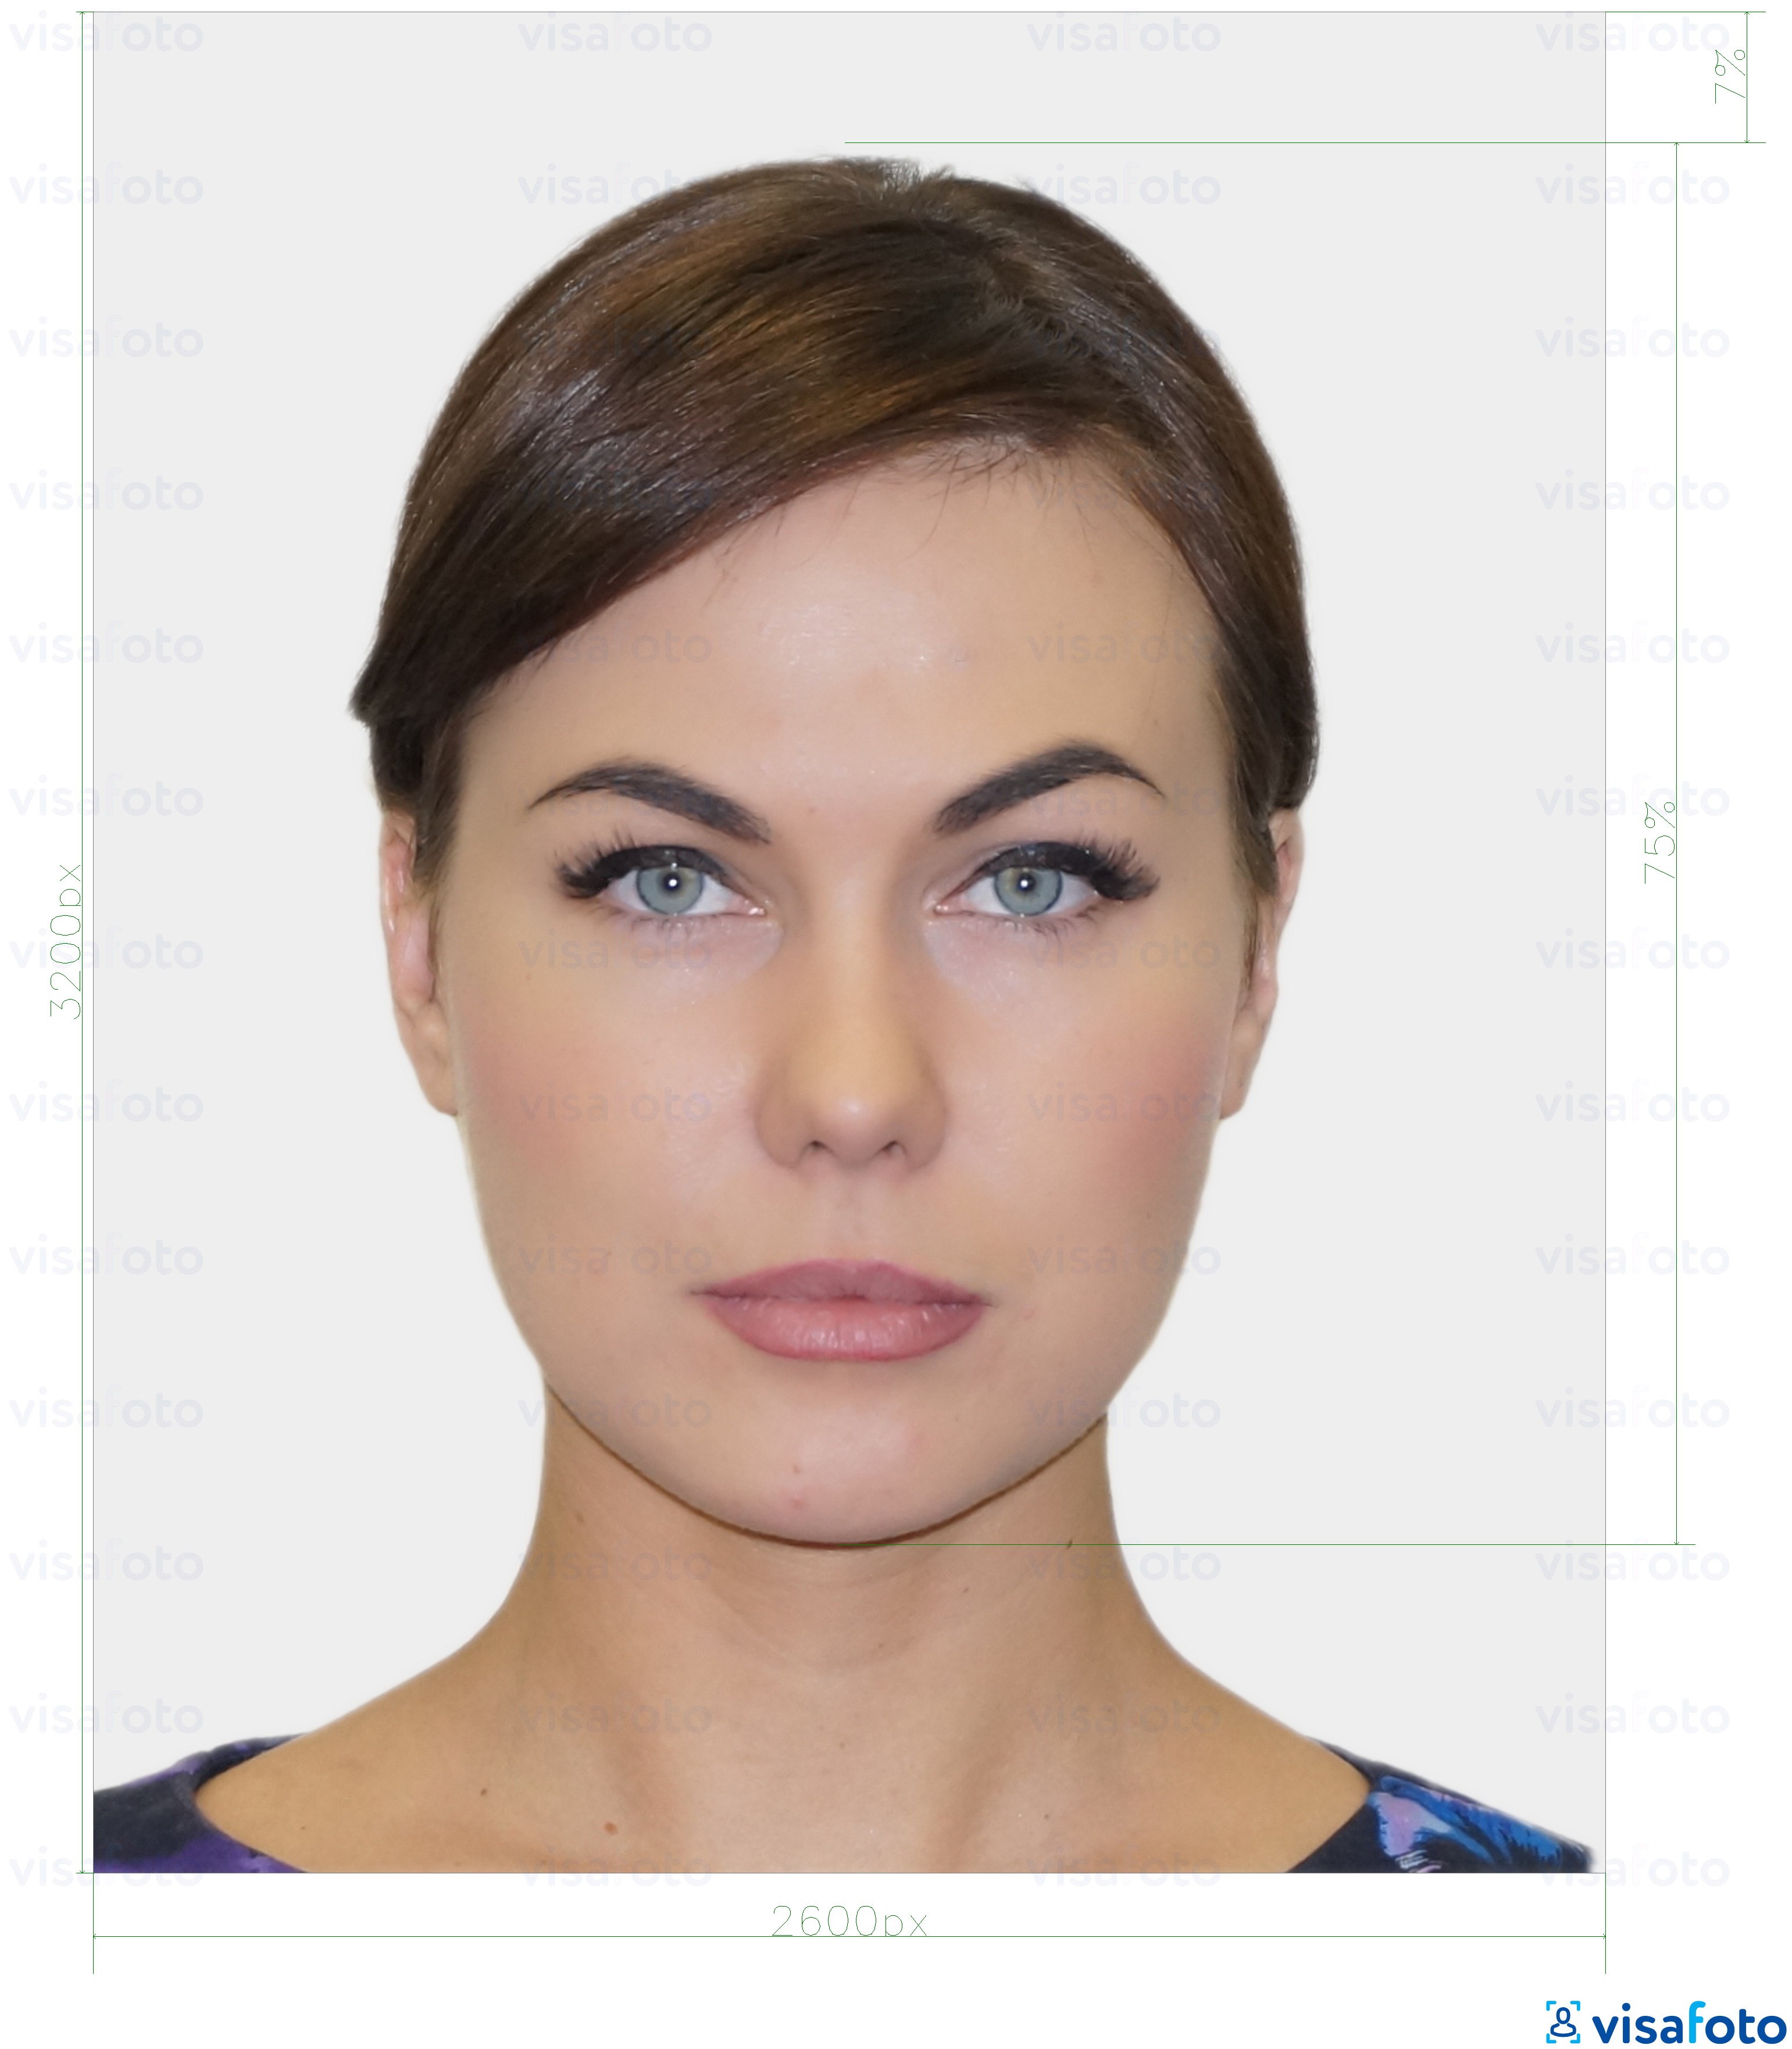 Voorbeeld van foto voor Estlandse digitale identiteitskaart 1300x1600 pixels met exacte maatspecificatie